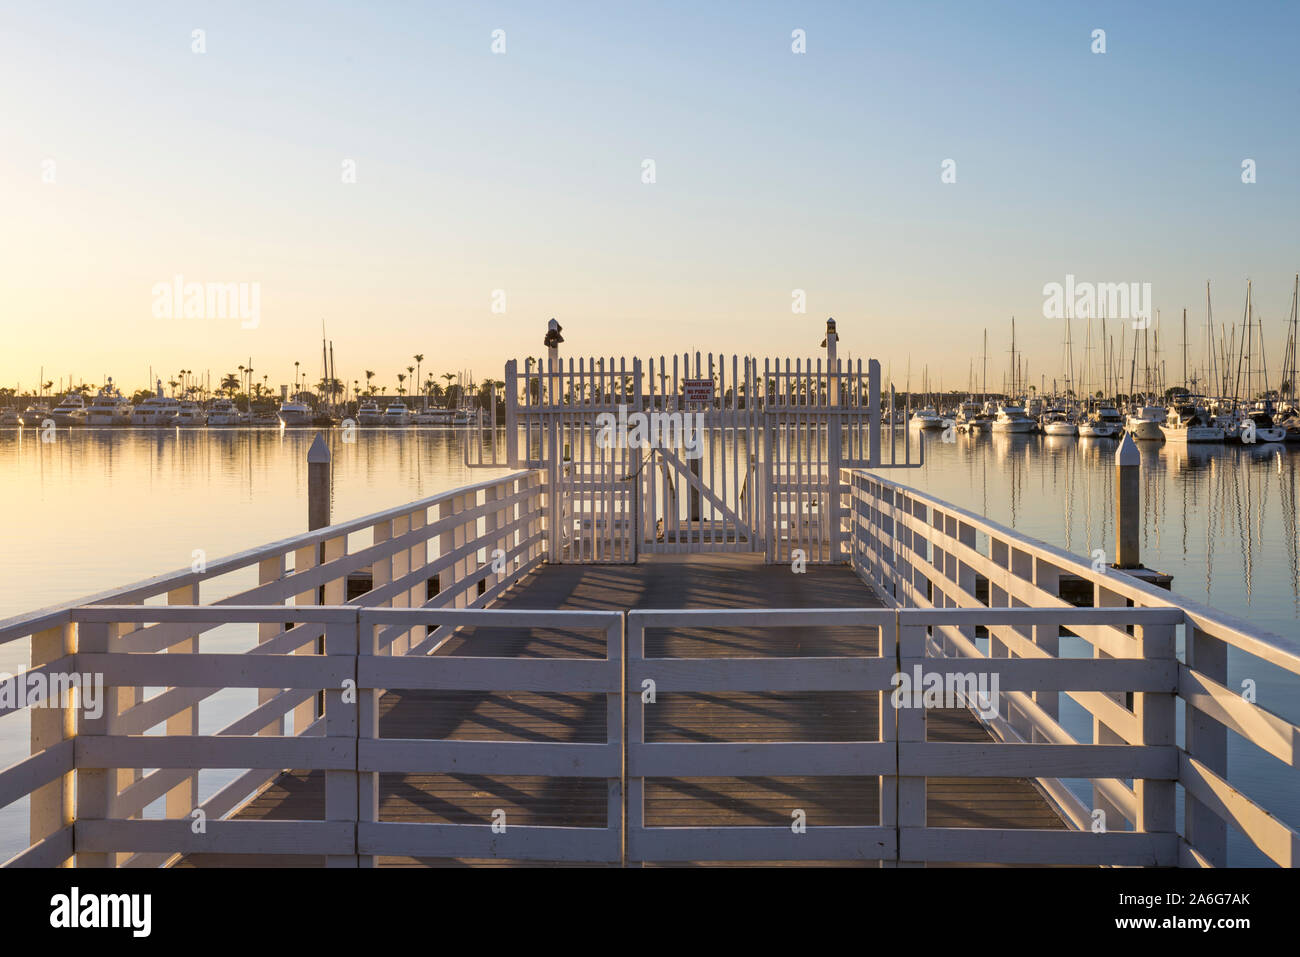 Hafen Szene von La Playa, das Bayfront Nachbarschaft in der Point Loma Gemeinschaft von San Diego, Kalifornien fotografiert. Stockfoto